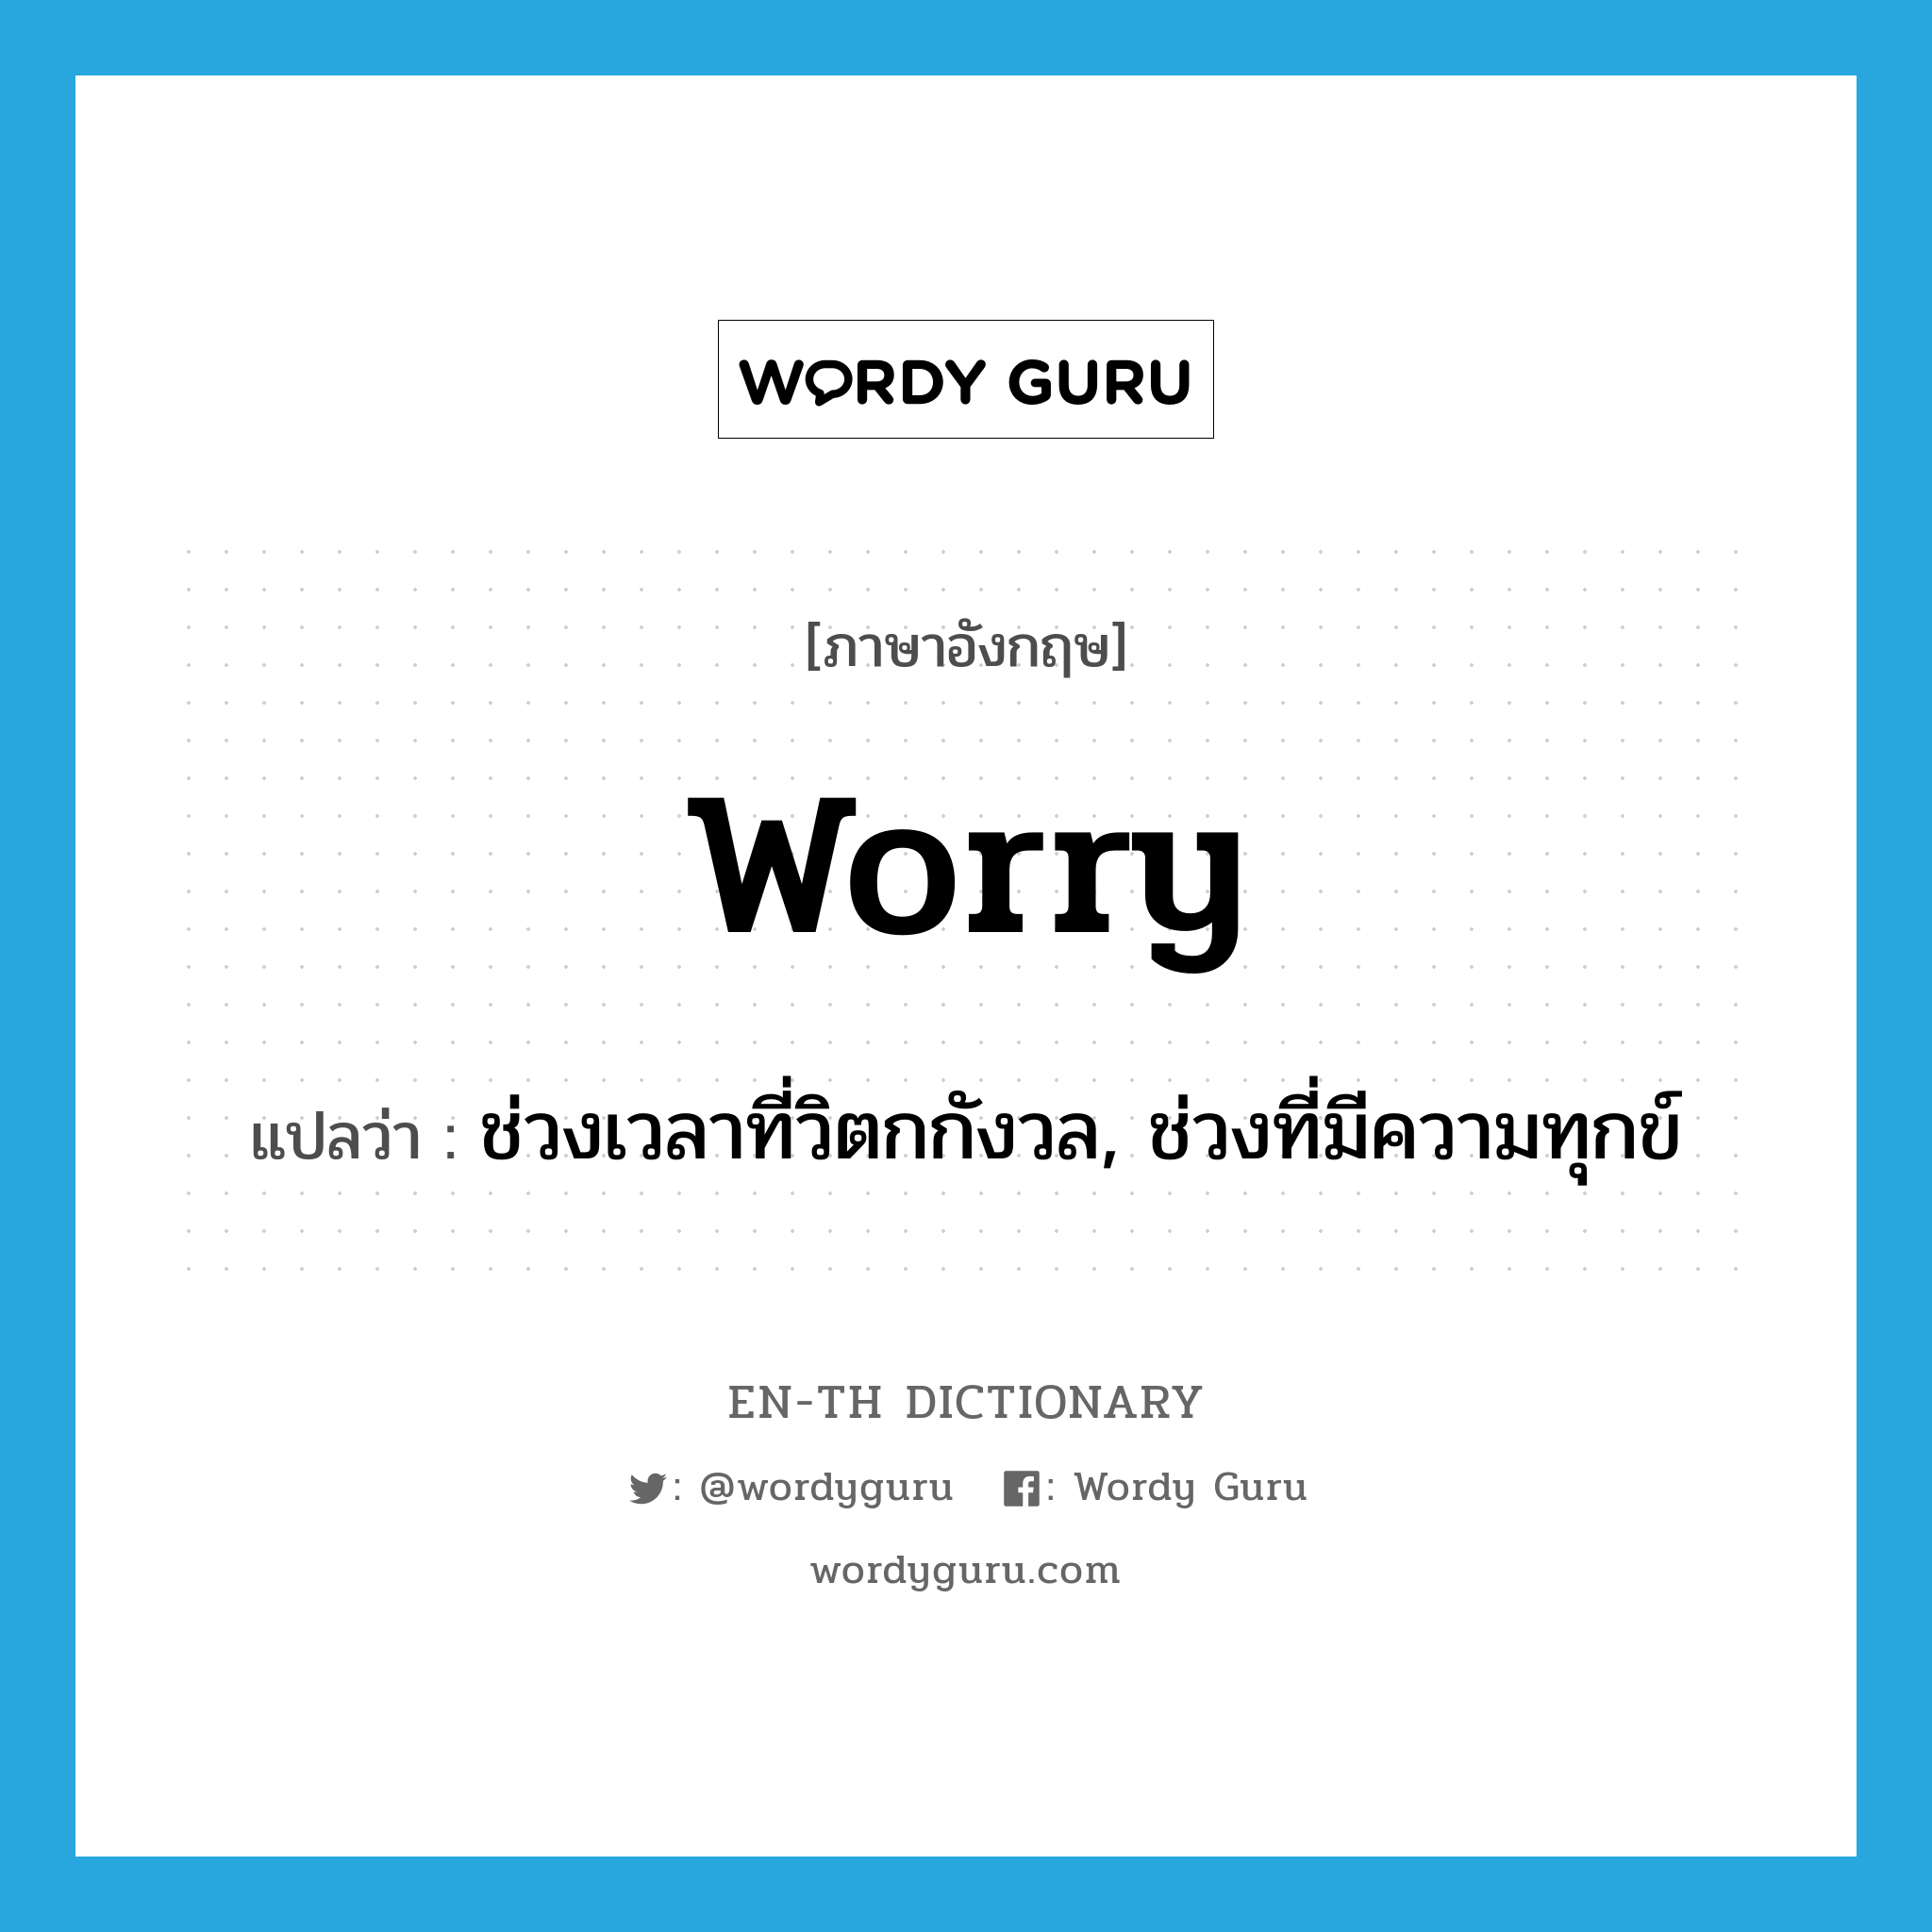 ช่วงเวลาที่วิตกกังวล, ช่วงที่มีความทุกข์ ภาษาอังกฤษ?, คำศัพท์ภาษาอังกฤษ ช่วงเวลาที่วิตกกังวล, ช่วงที่มีความทุกข์ แปลว่า worry ประเภท N หมวด N